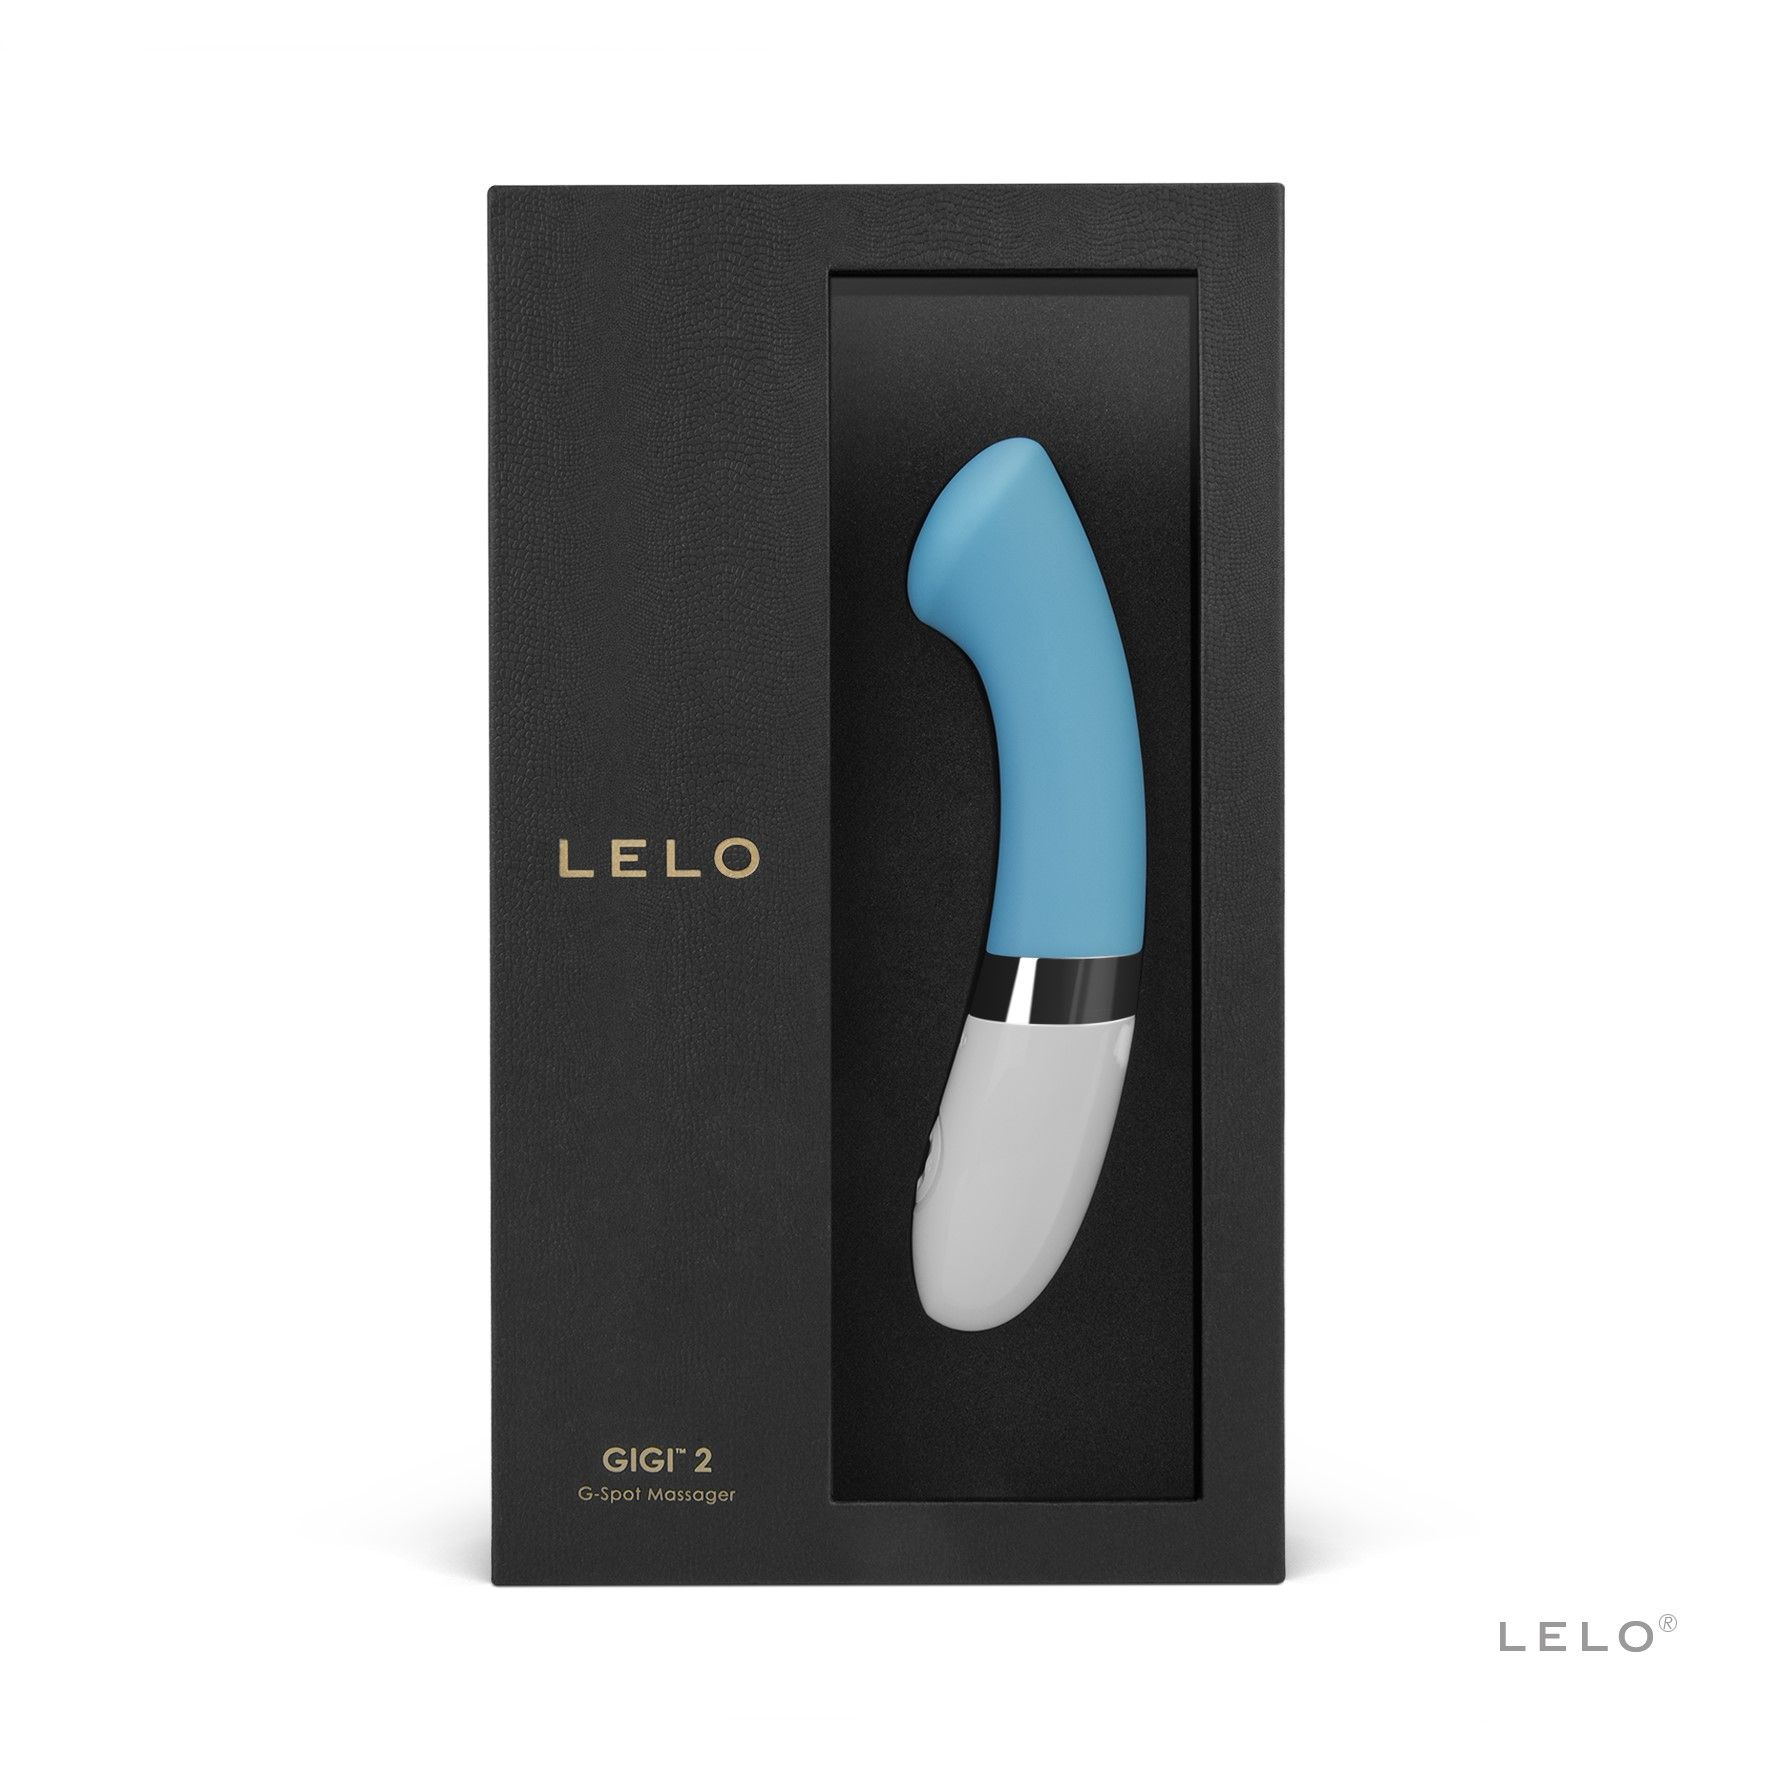 Gigi LELO Turquoise Vibrator 2 g-spot-vibrators - - LELO G-Spot